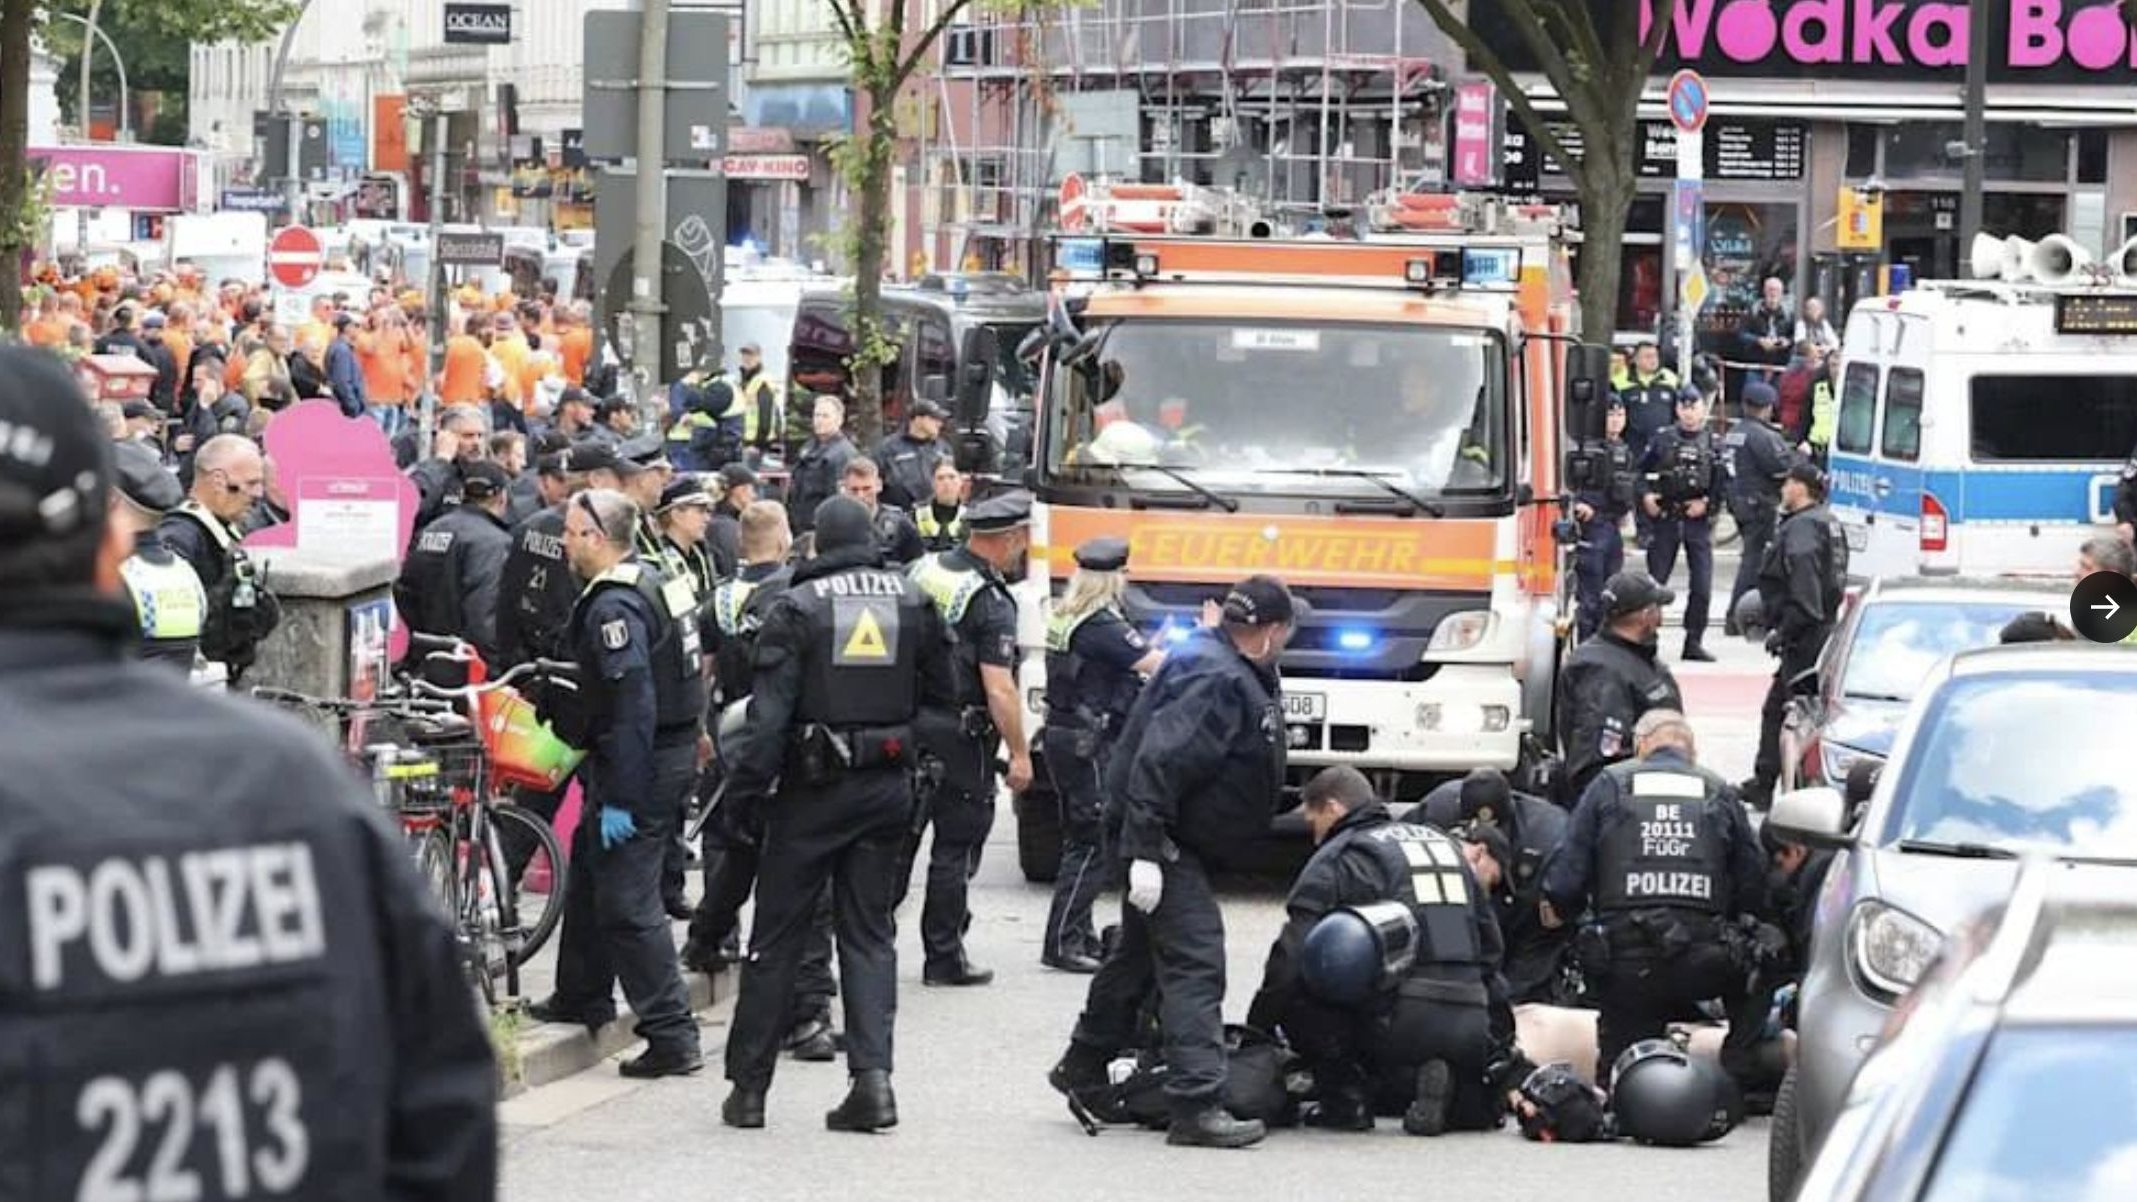 Imagens retiradas do jornal alemão Bild de homem com machado a atacar a polícia